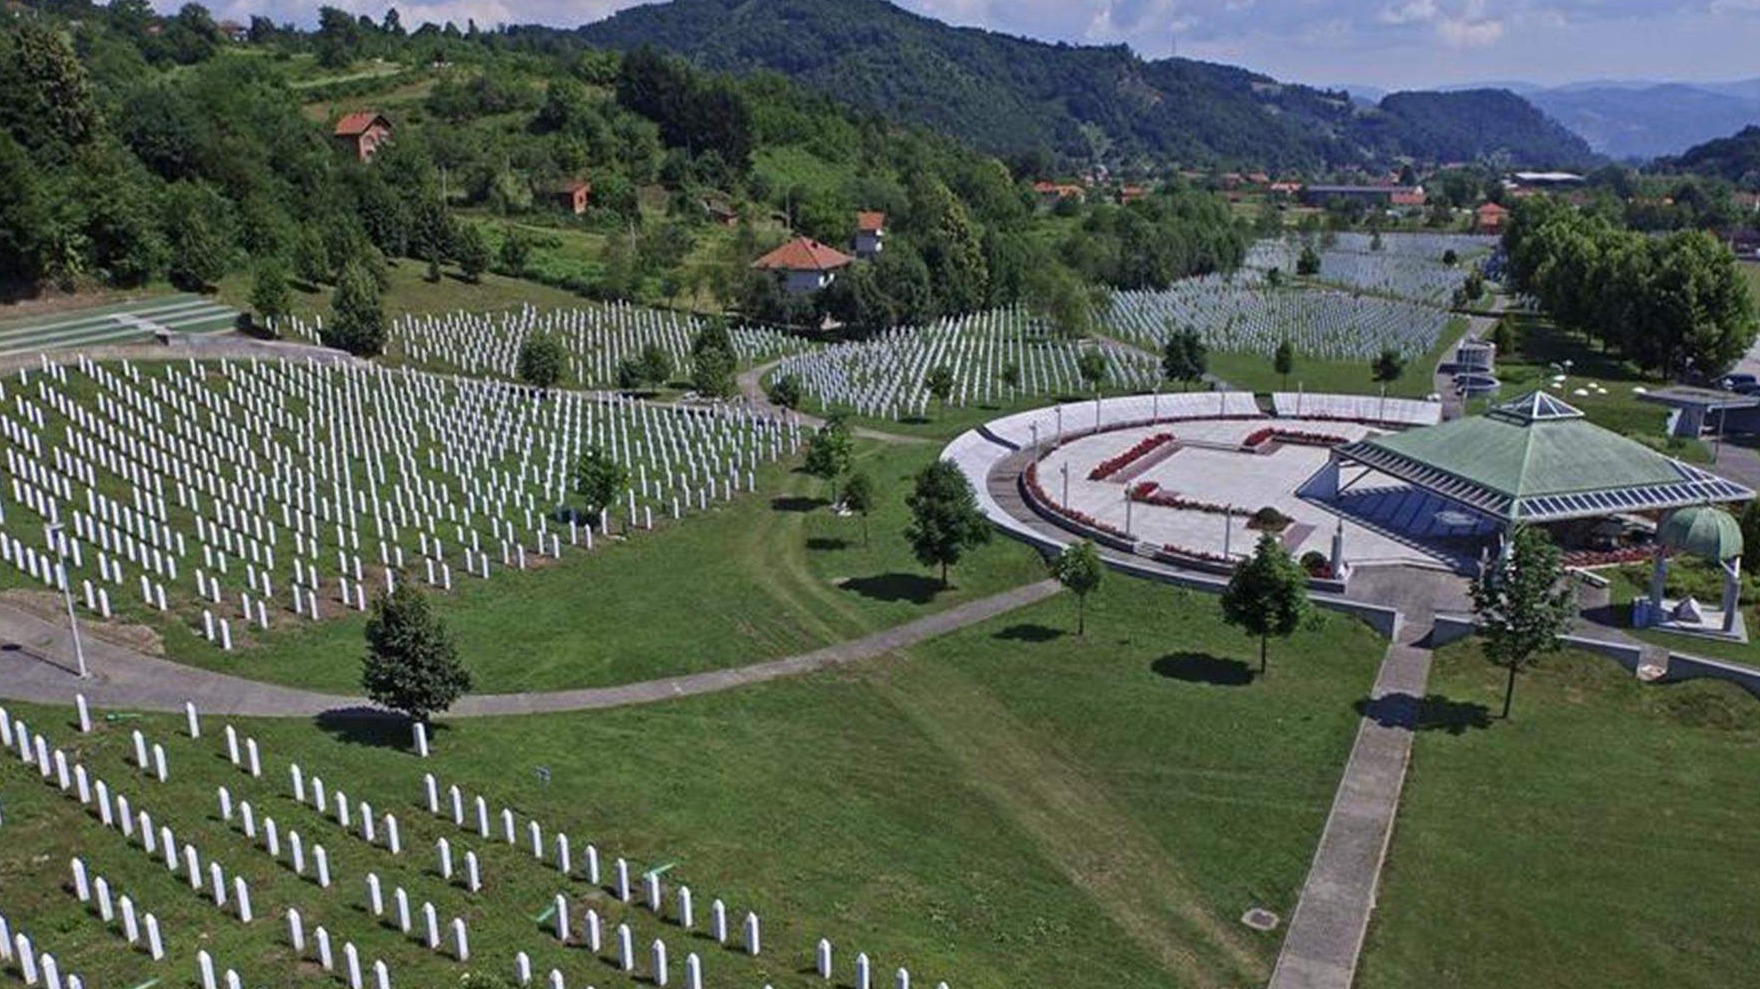 Intelektualci u BiH i regionu pozivaju na usvajanje rezolucije UN-a o Srebrenici